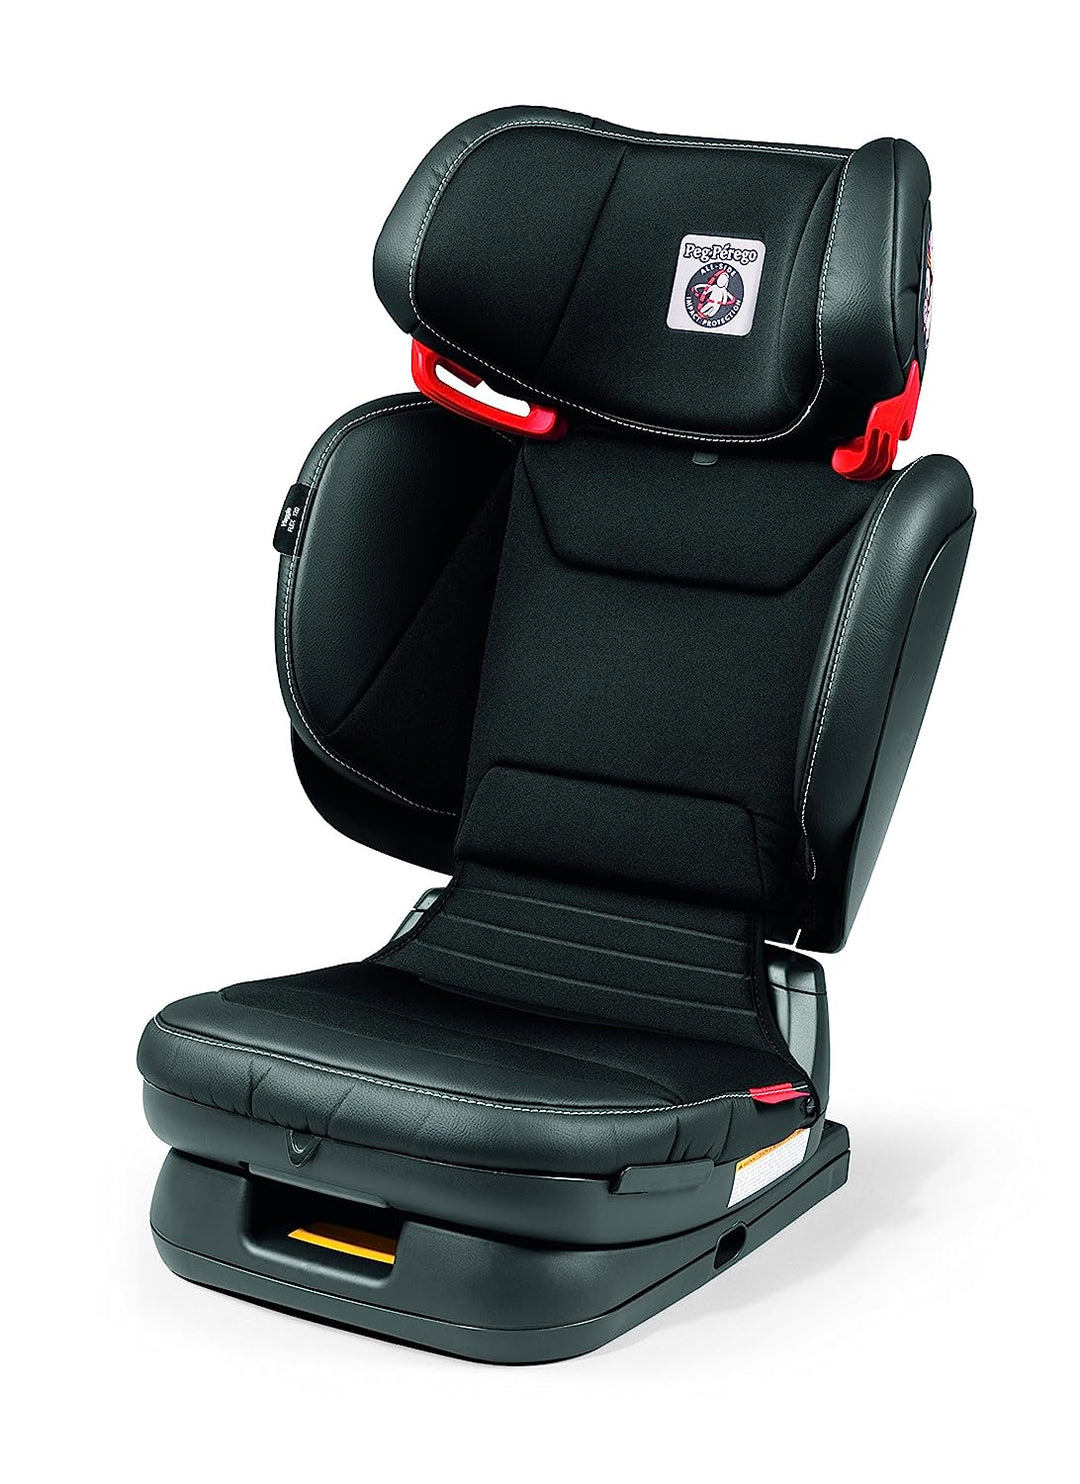 Peg Perego Viaggio Flex 120 Italian Made Booster Seat